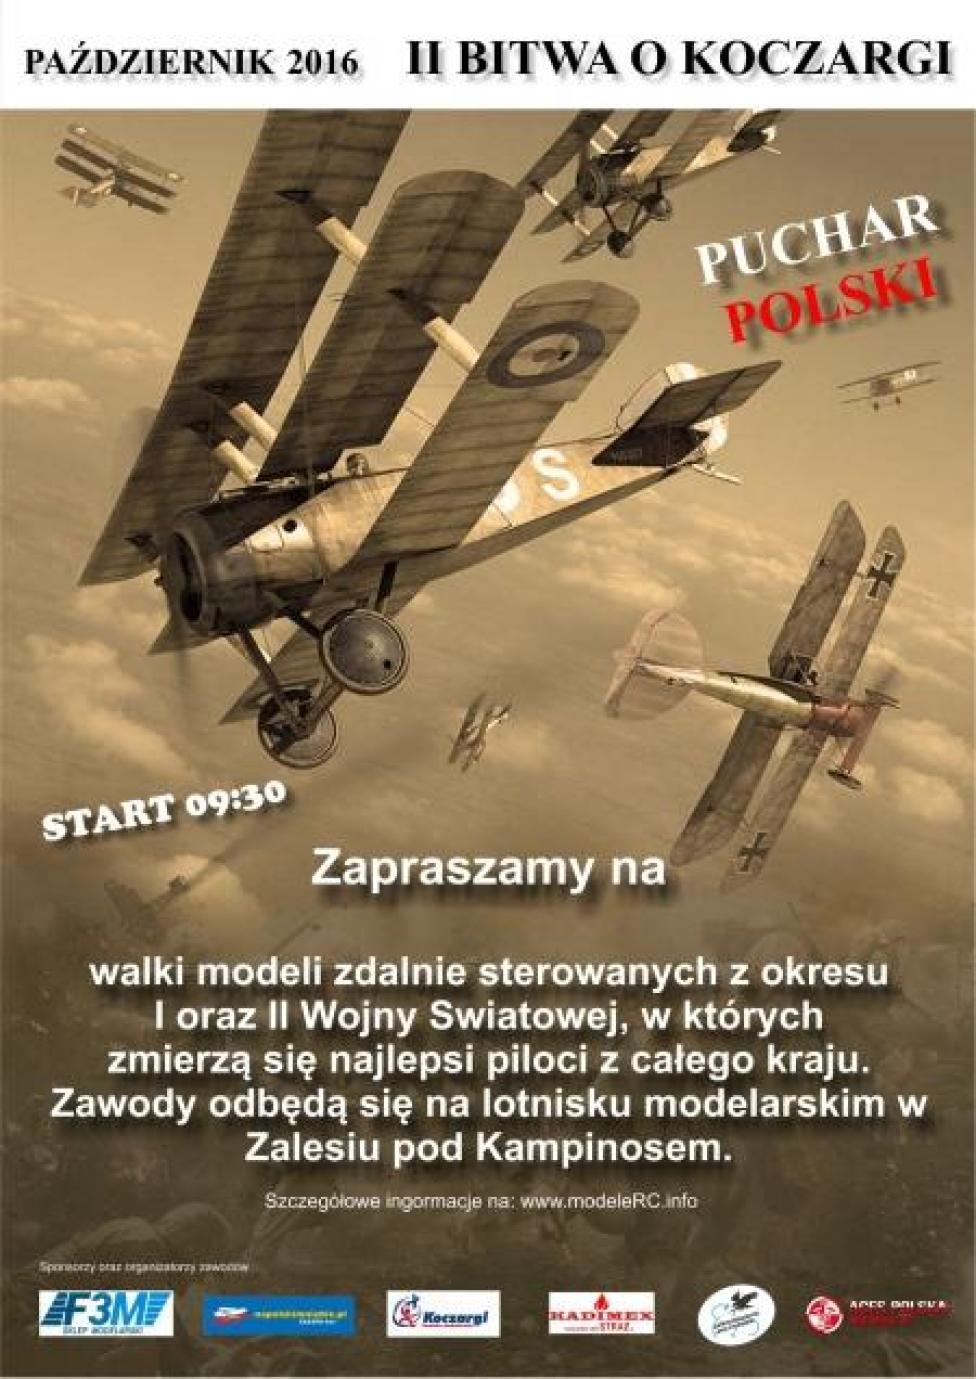 II Bitwa o Koczargi – walki modeli zdalnie sterowanych (fot. aircombat.pl)